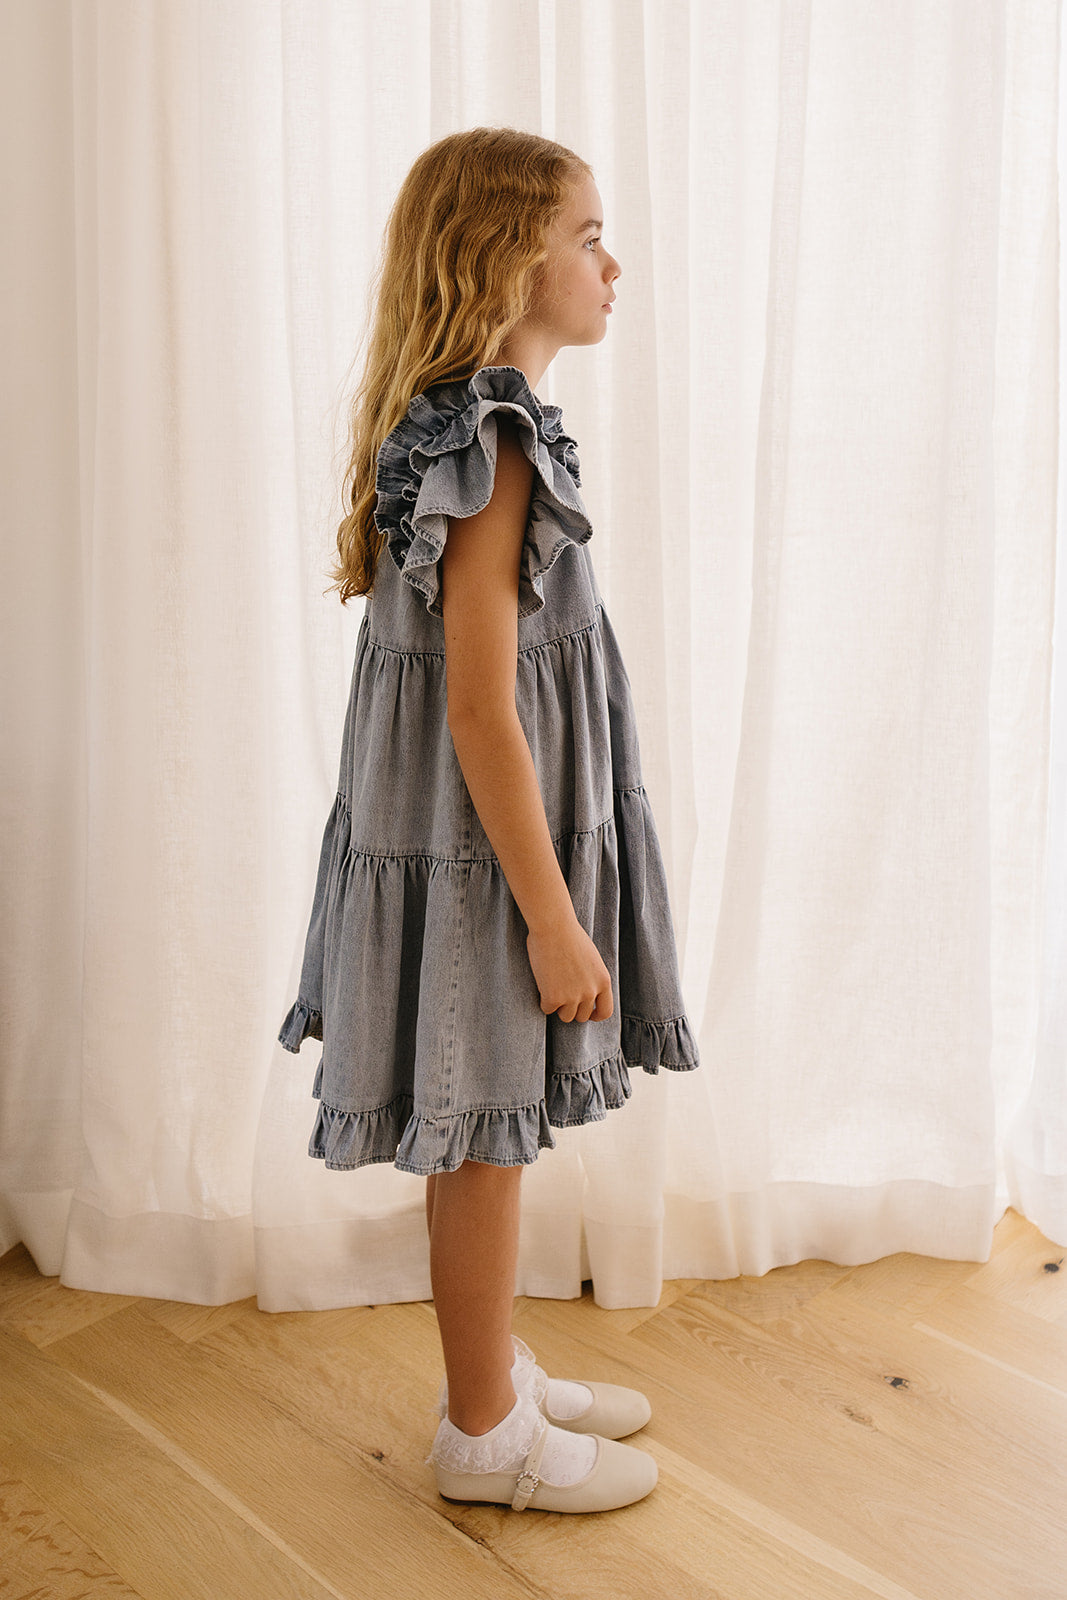 Steph By Petite Amalie Chambray Ruffle Dress